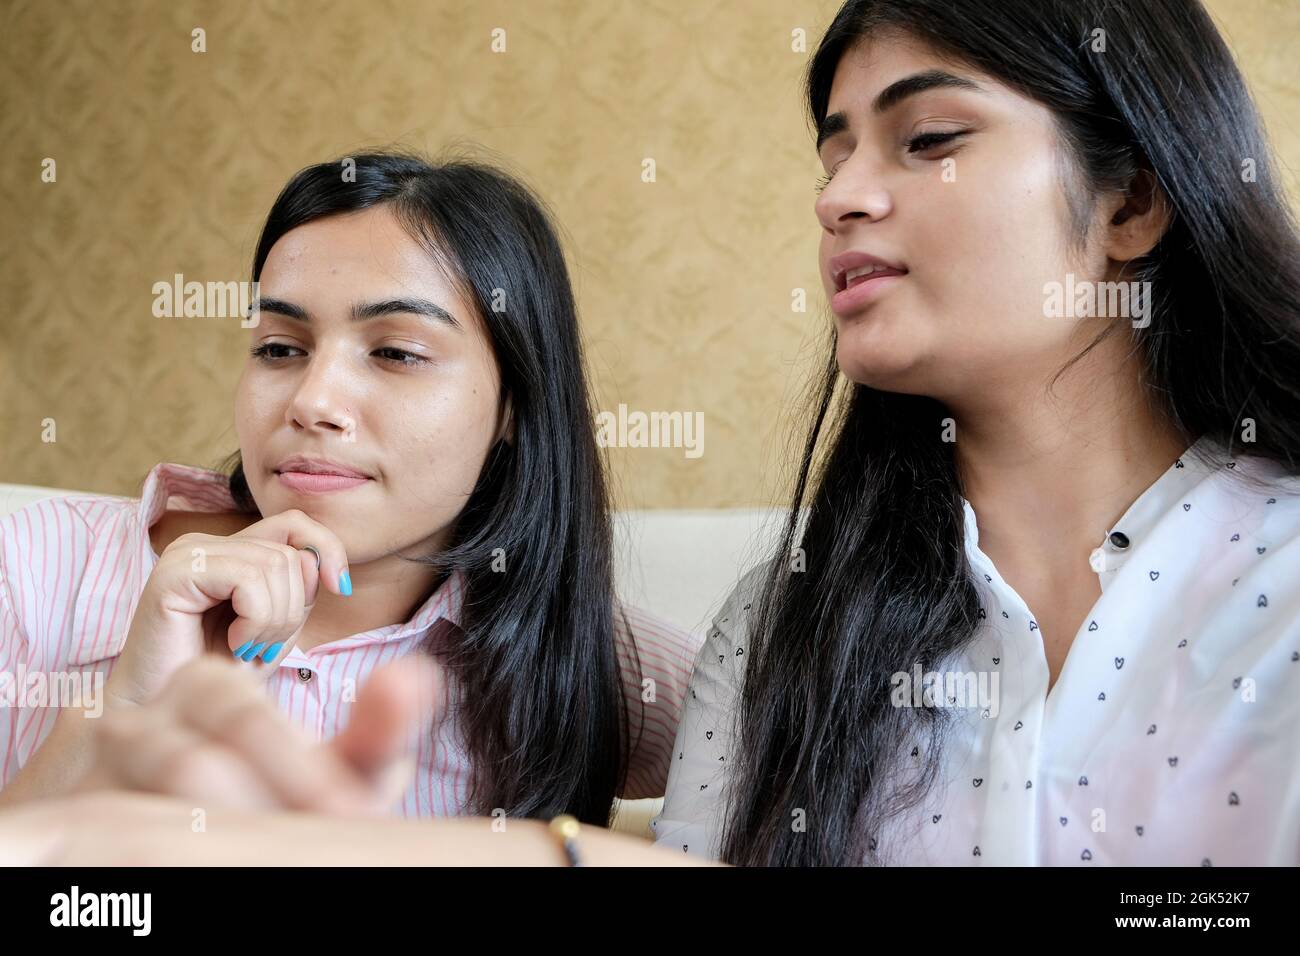 Nahaufnahme von zwei jungen Mädchen, die etwas angeschaut haben Stockfoto